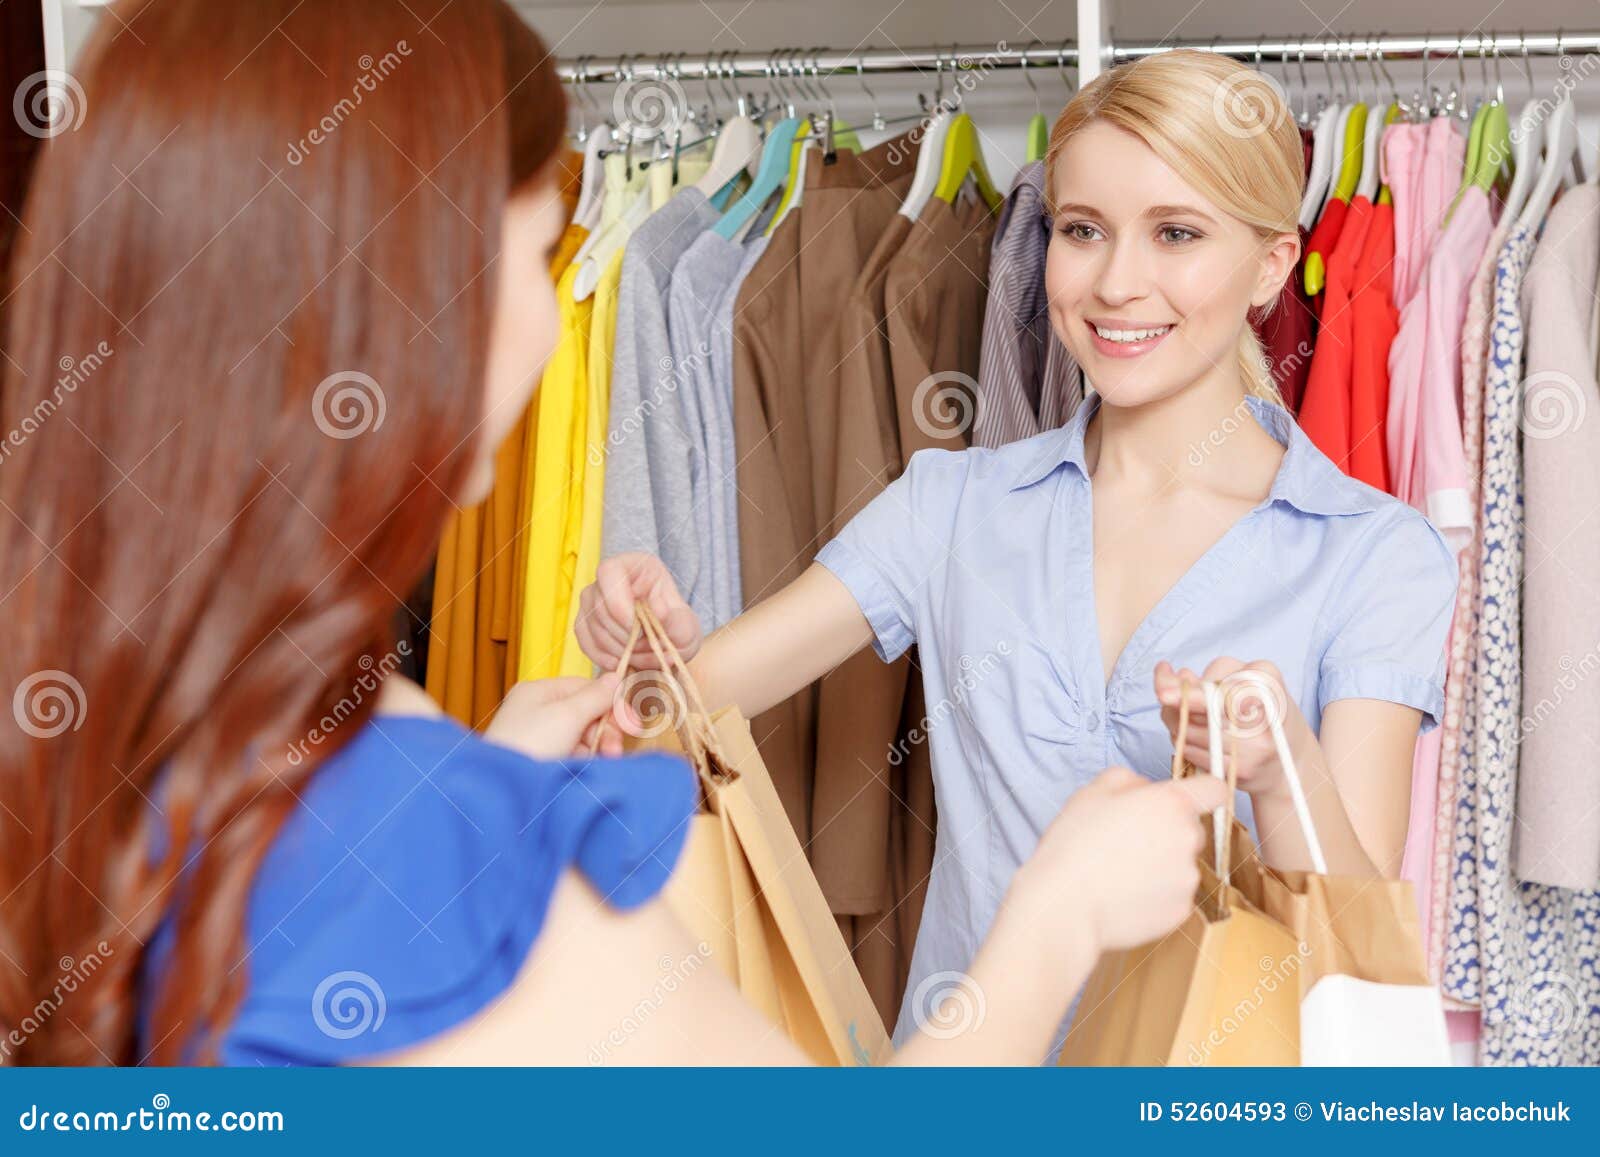 Shop assistant good. Продавец дает сумку. Продавец сумок клиент. Фото девушки в зеркале женская одежда магазин. Вопросы стилиста к клиенту перед шопингом.